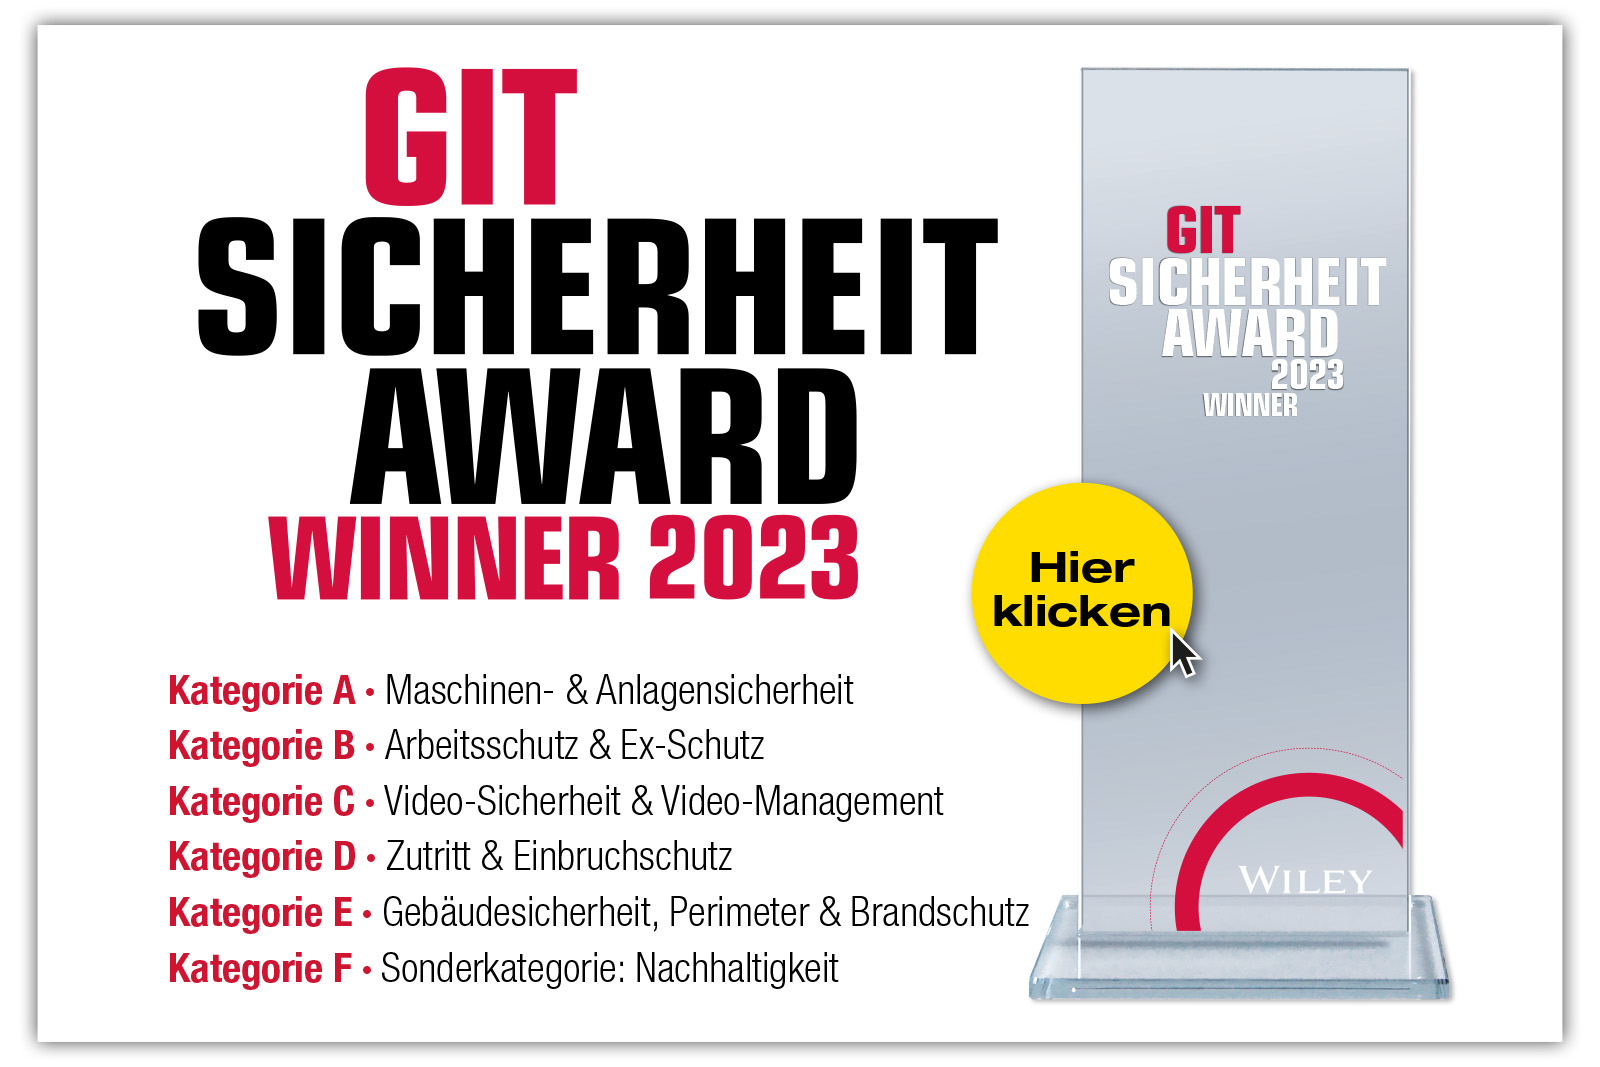 GIT SICHERHEIT AWARD 2023 - Die Gewinner